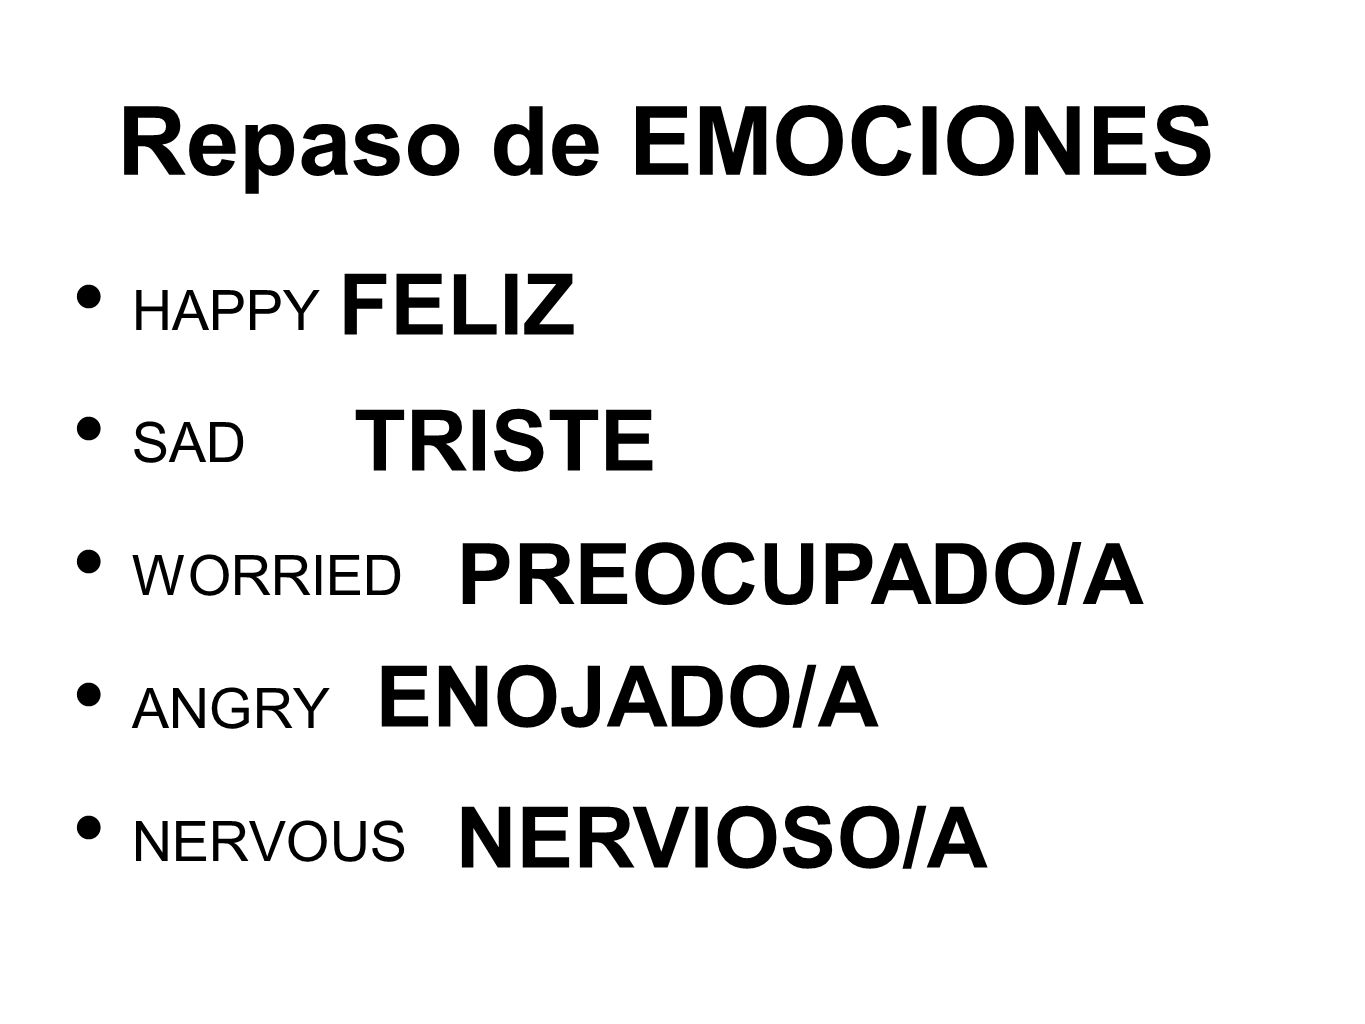 Repaso de EMOCIONES FELIZ TRISTE PREOCUPADO/A ENOJADO/A NERVIOSO/A